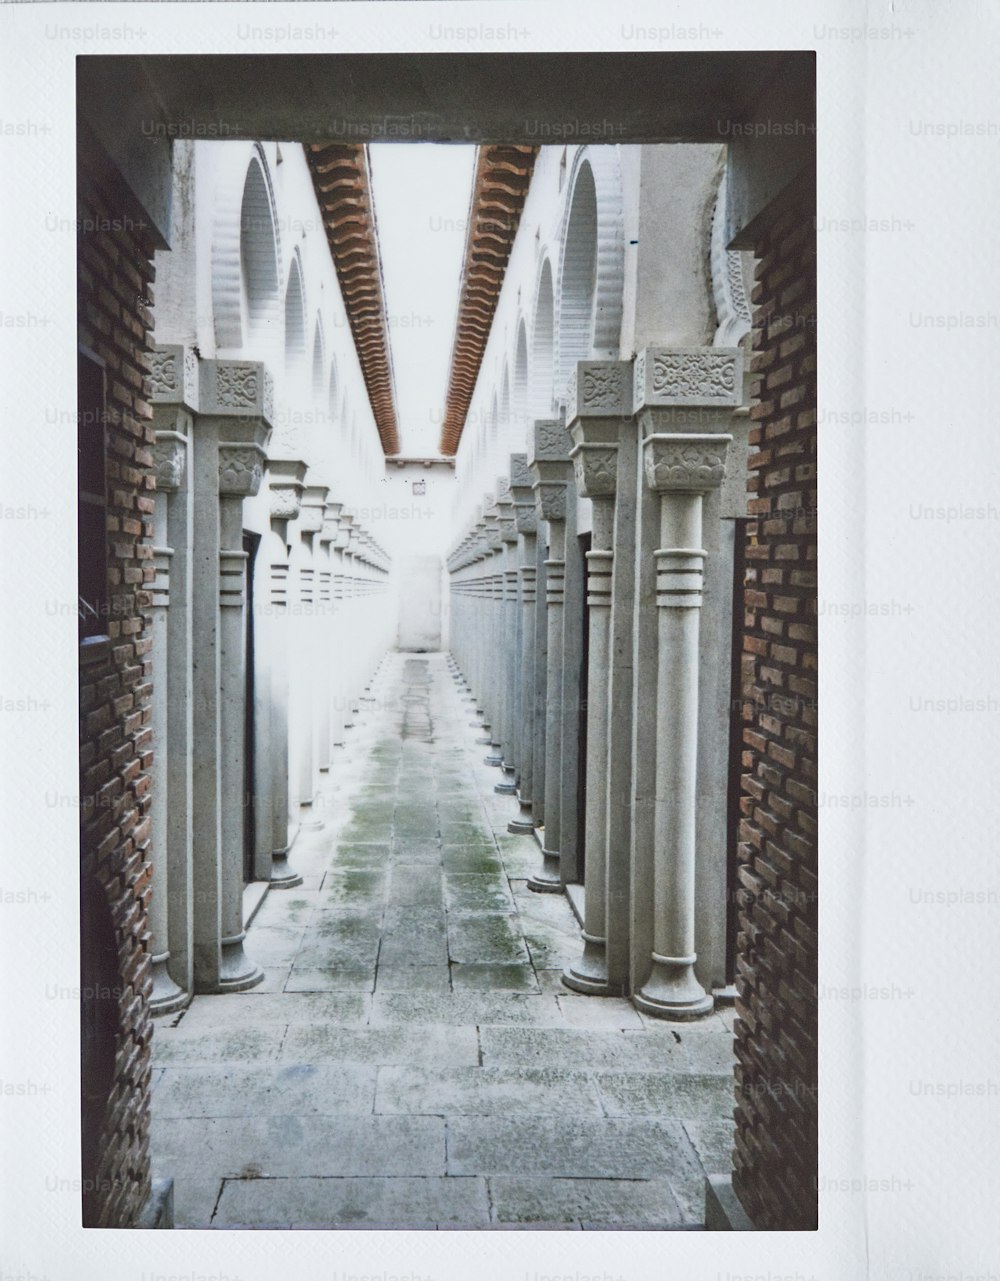 uma imagem de uma passarela com colunas e arcos